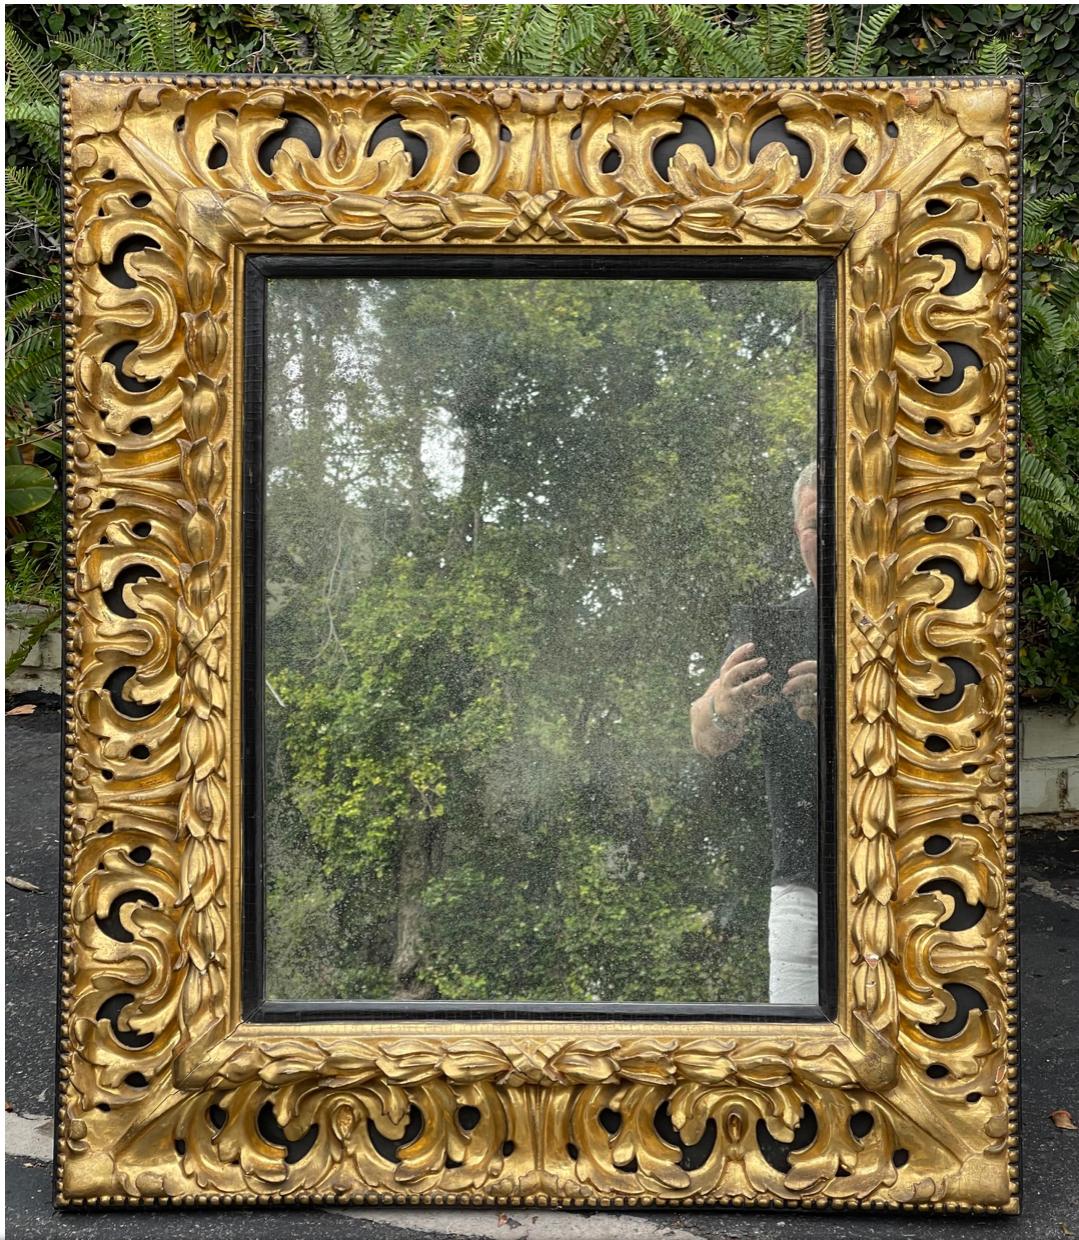 Antique Miroir Empire Louis XVI du début du 19ème siècle en bois doré et ébène. Il présente du bois doré sculpté sur du bois ébénisé et est doté d'un verre miroir vieilli fait sur mesure.